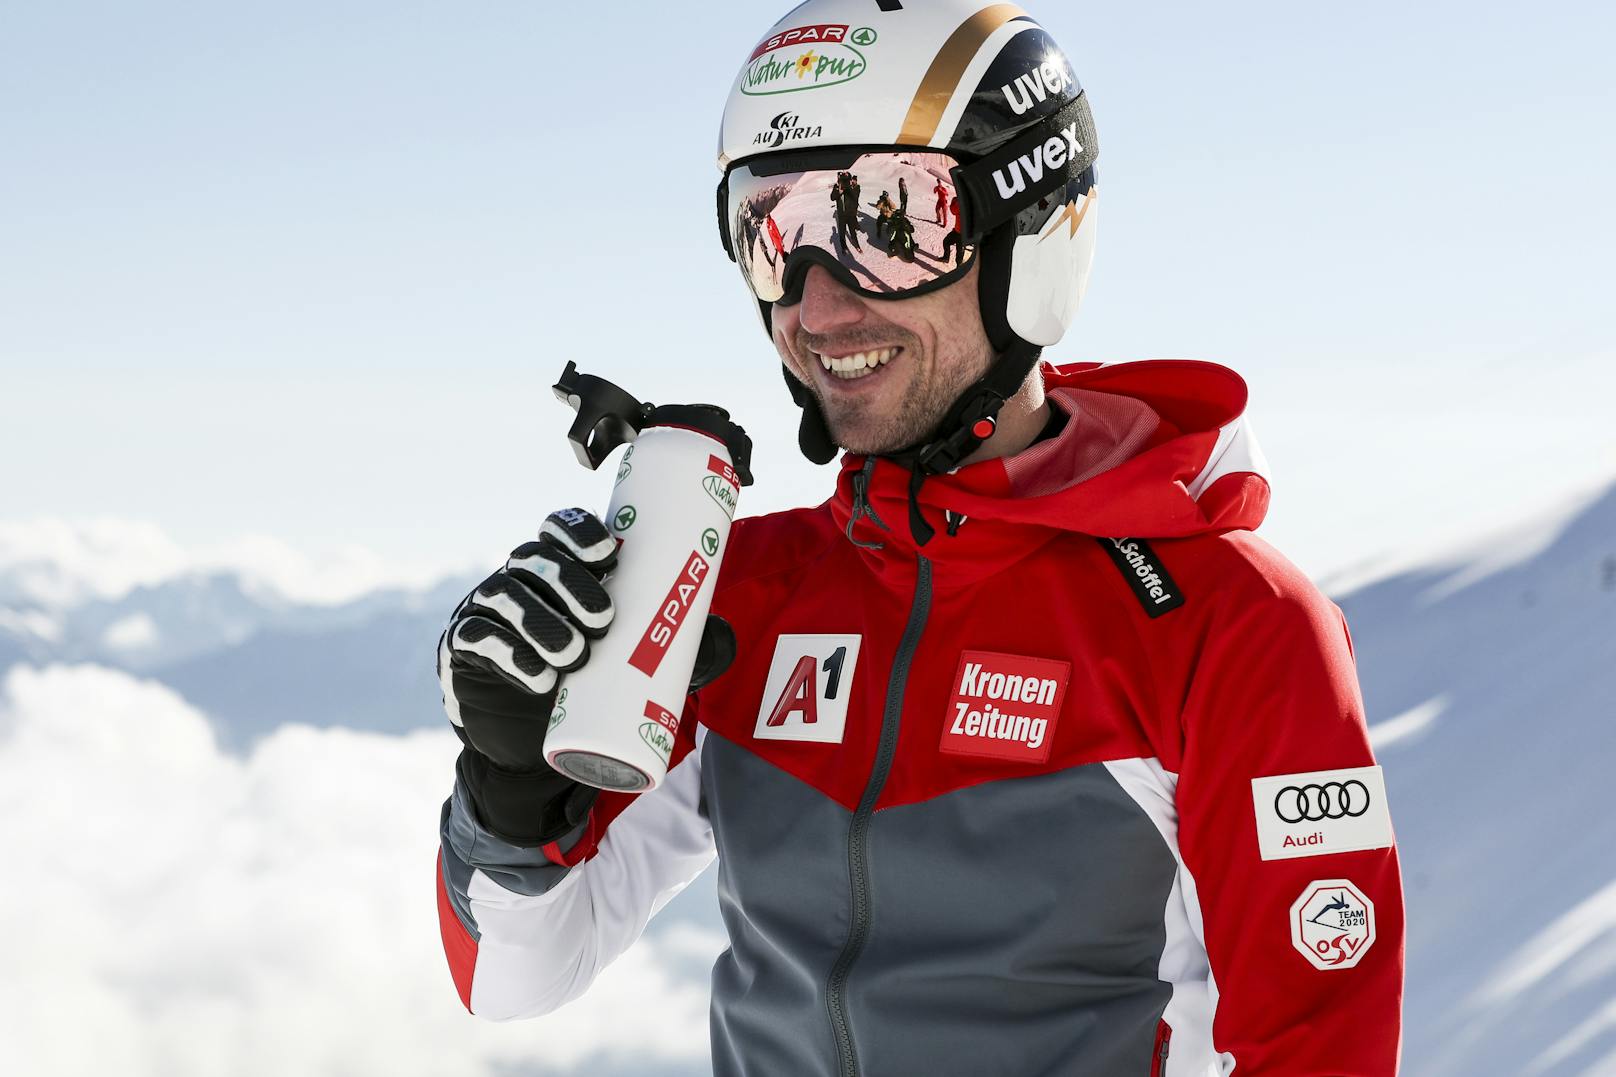 Hannes Reichelt trainiert wieder auf Schnee